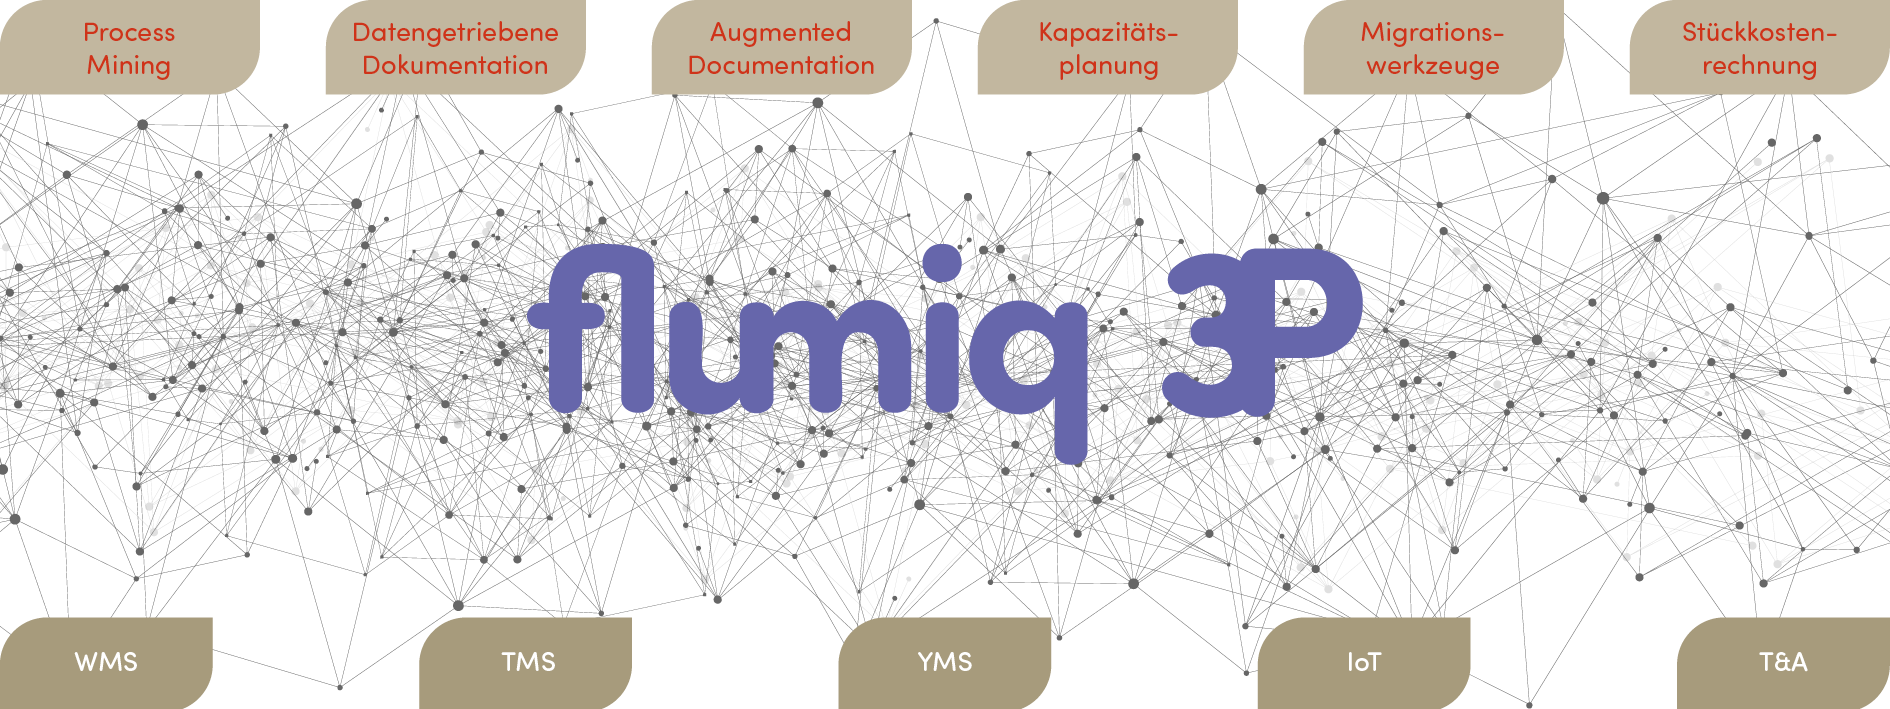 flumiq 3 P Netzwerk Schaubild